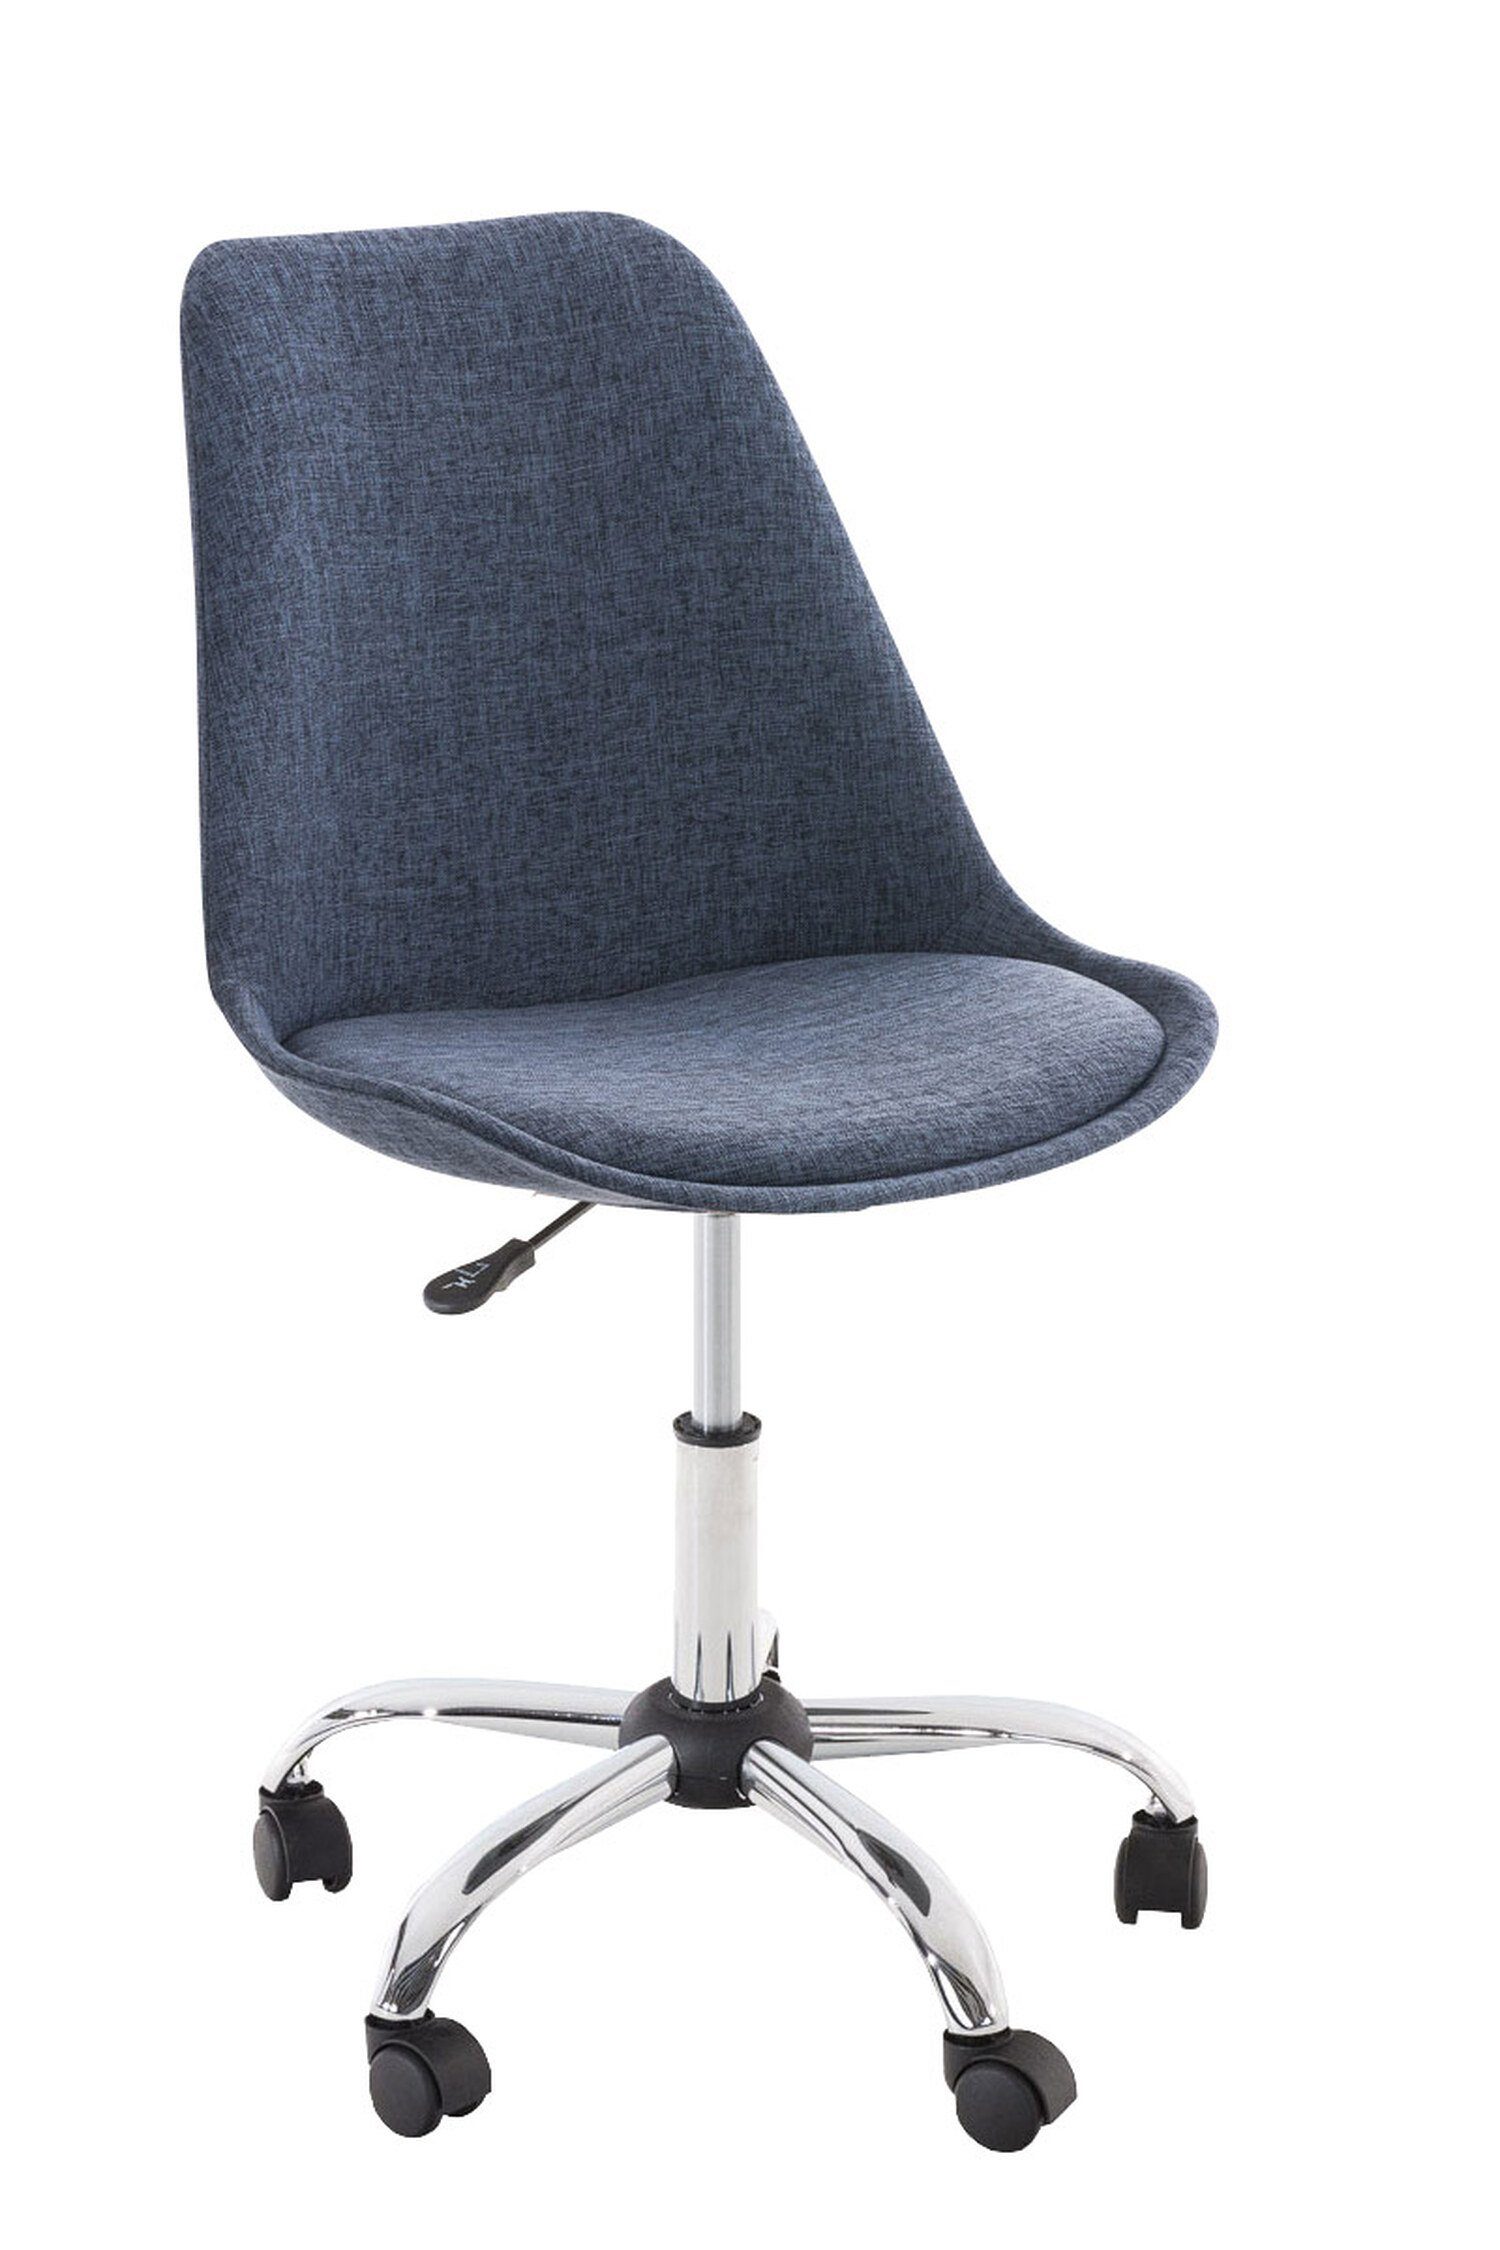 TPFLiving Bürostuhl Pegasus mit bequemer Rückenlehne (Schreibtischstuhl, Drehstuhl, Konferenzstuhl, Chefsessel), Gestell: Metall chrom - Sitzfläche: Stoff blau